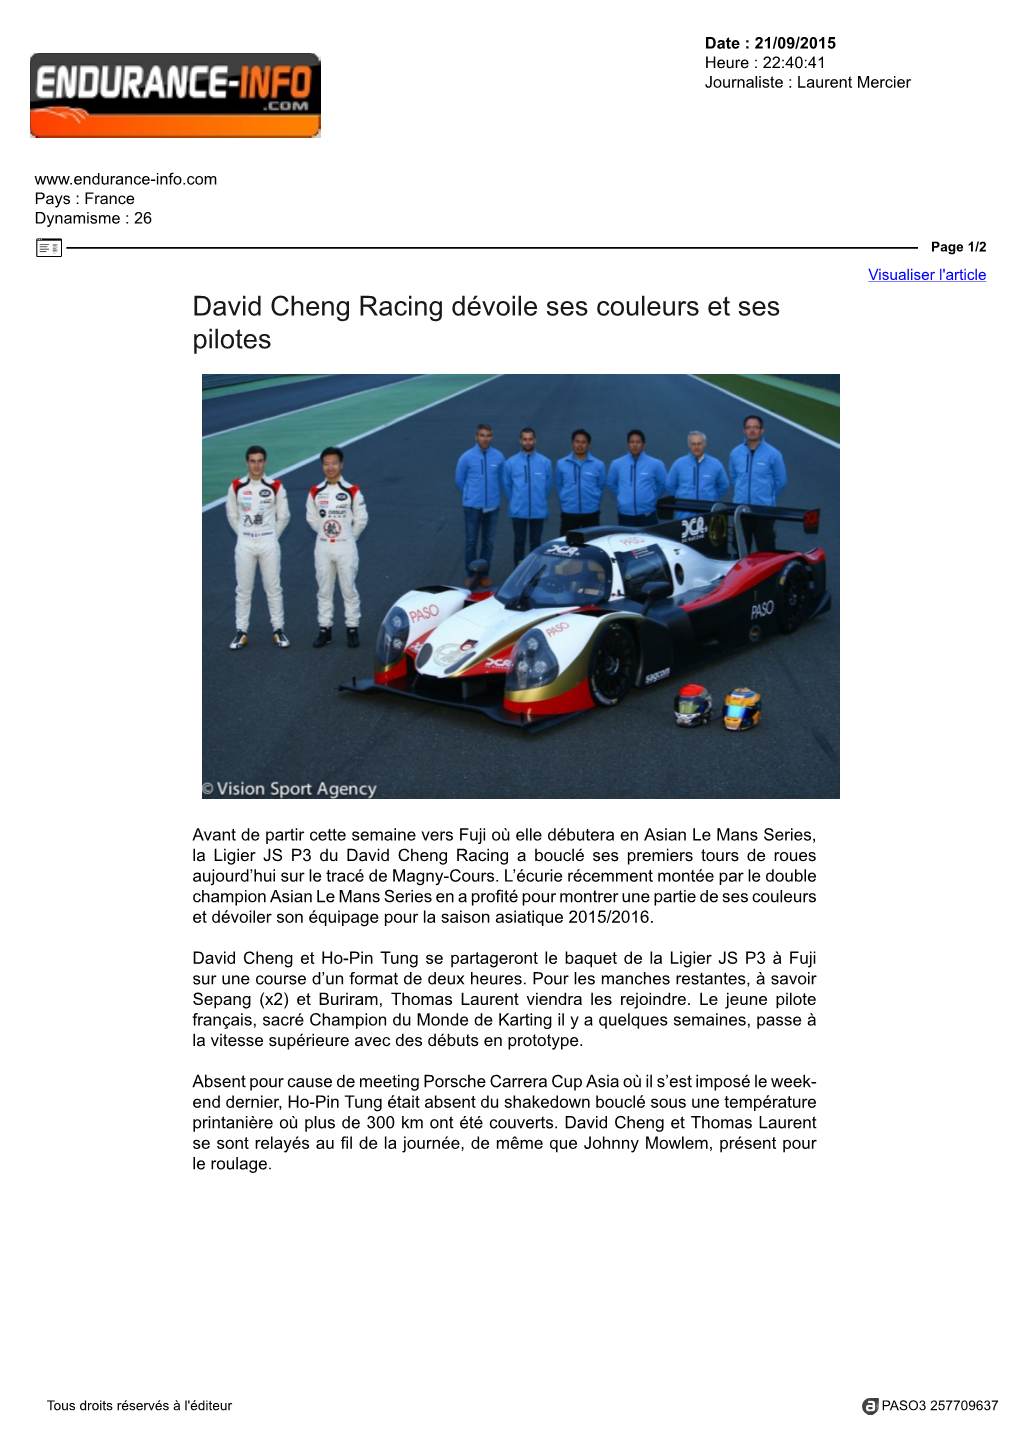 David Cheng Racing Dévoile Ses Couleurs Et Ses Pilotes